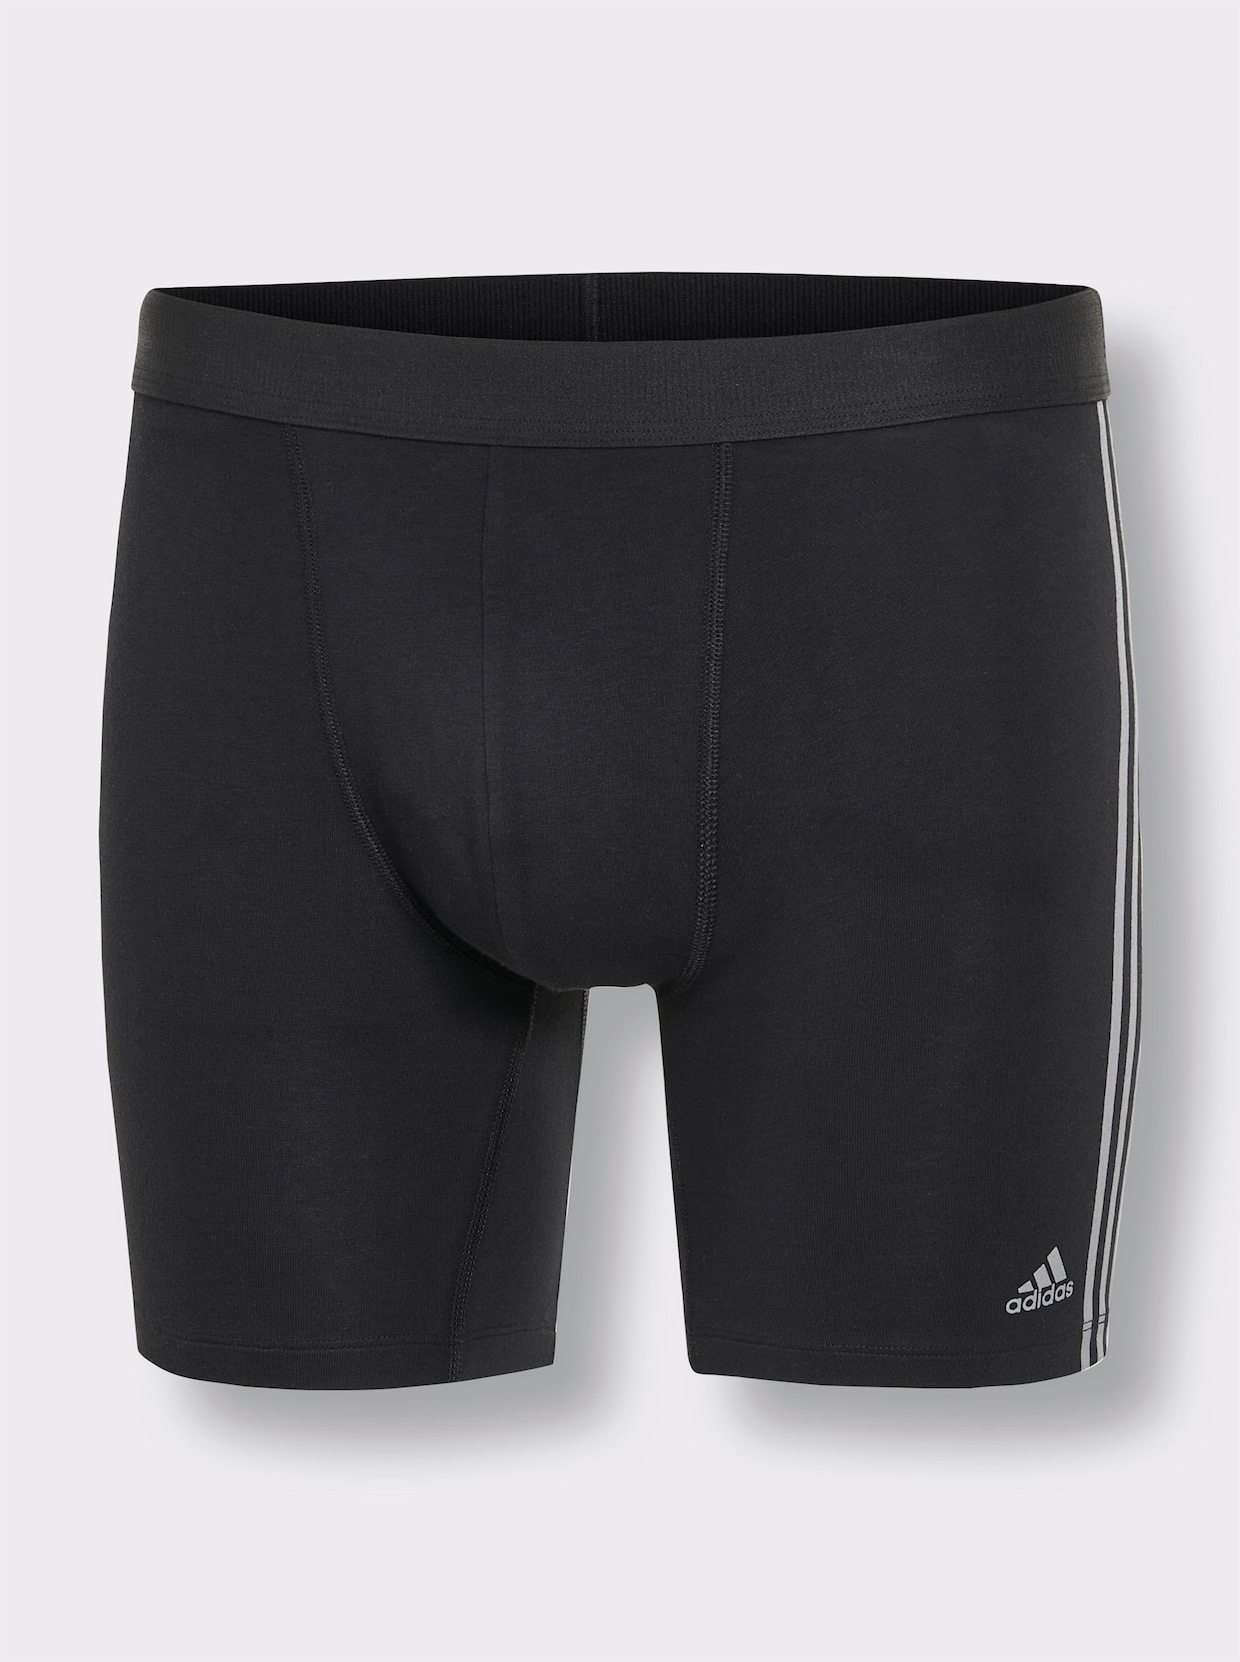 Adidas Hose kurz - weiß + grau + schwarz